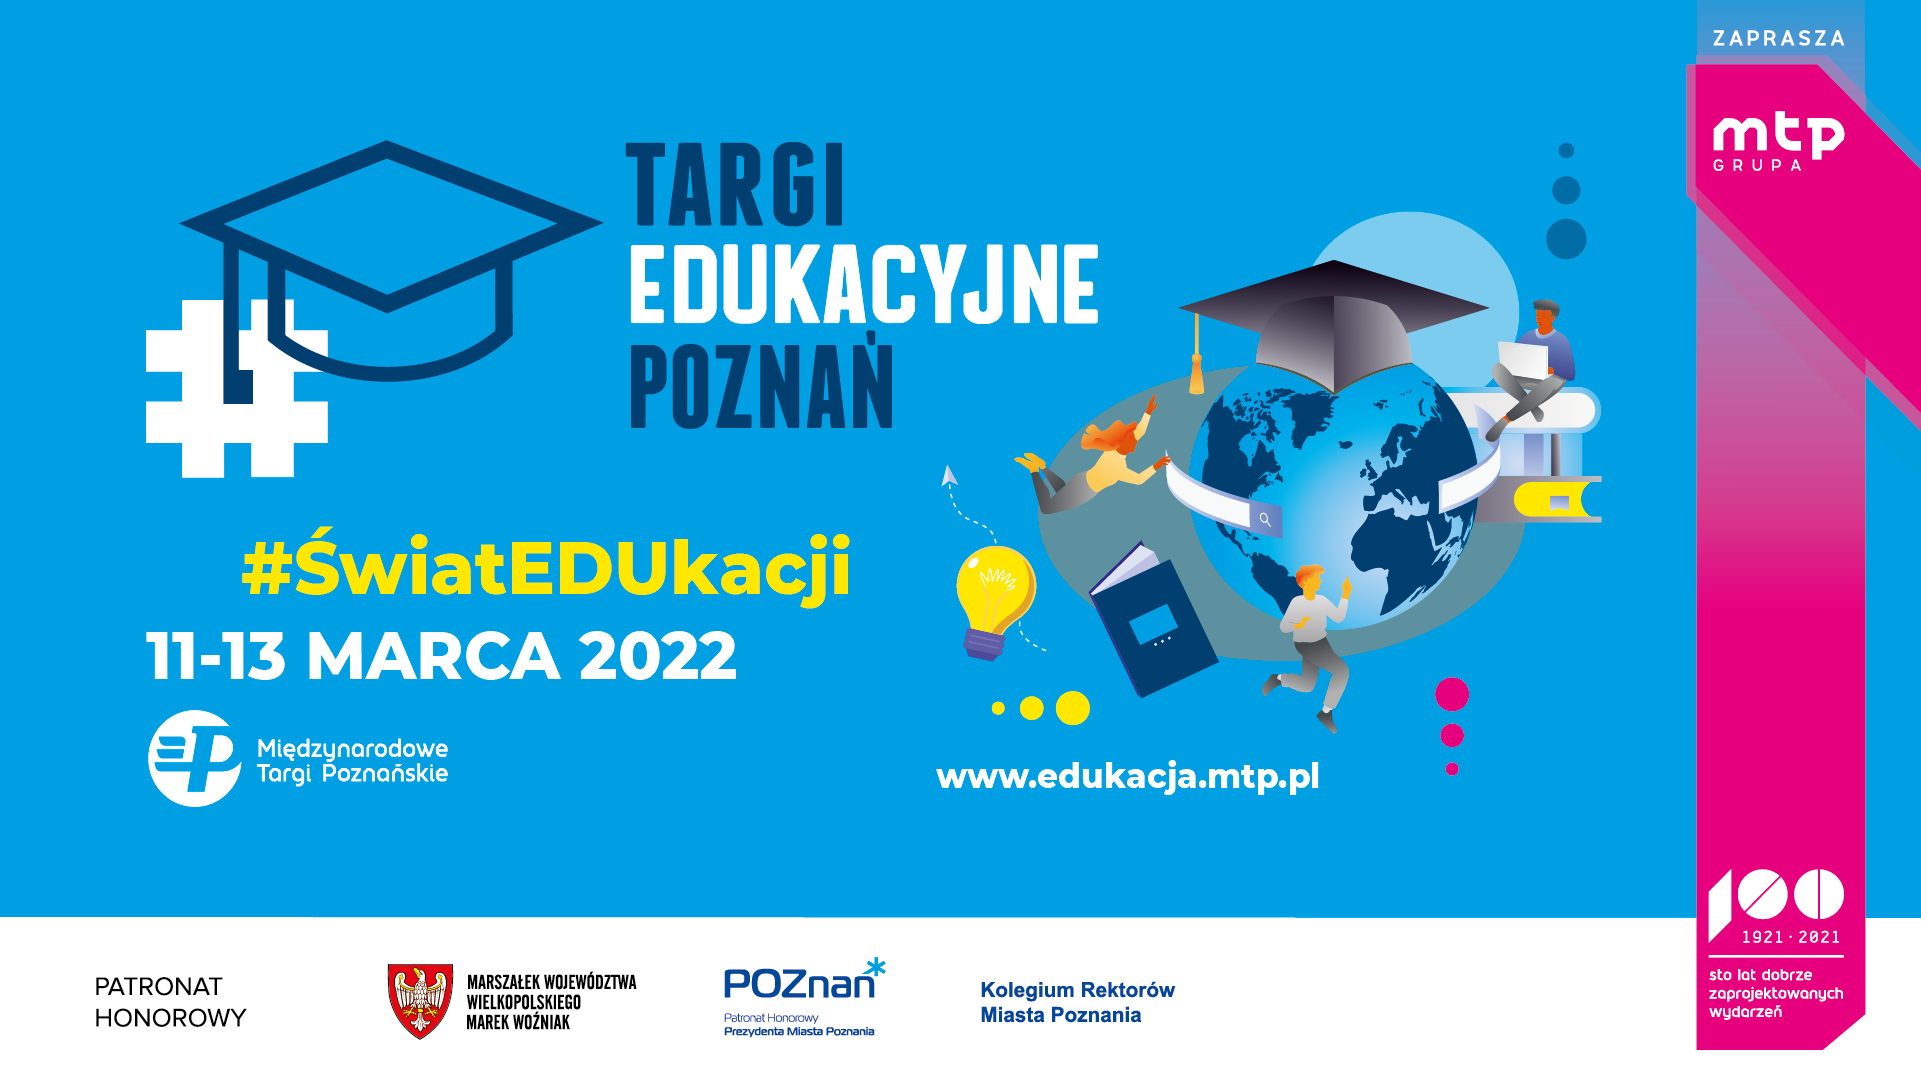 targi-edukacyjne-pozna-2022-bezpo-rednia-transmisja-z-wydarze-csw2020